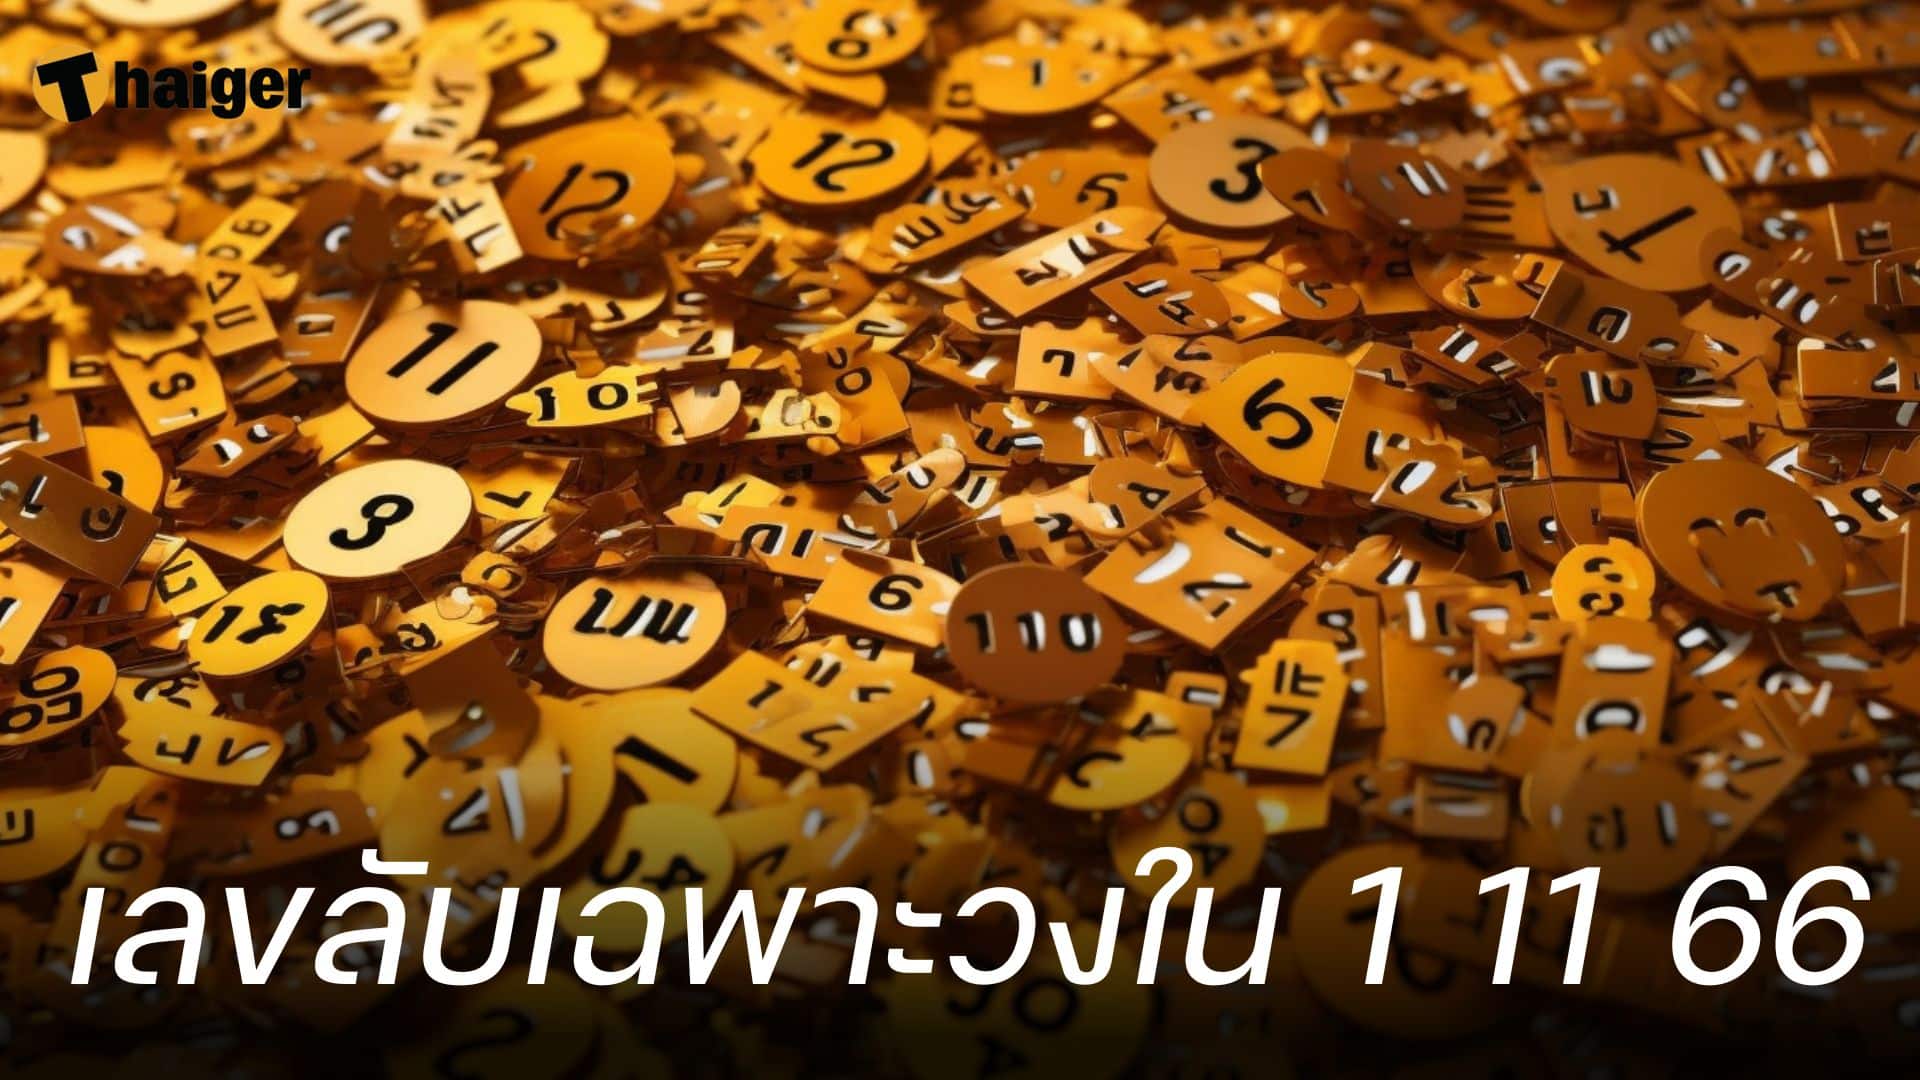 รีบดูก่อนใคร เลขลับเฉพาะวงใน 1 พฤศจิกายน 2566 รู้กันแค่นี้เท่านั้น! | Thaiger ข่าวไทย